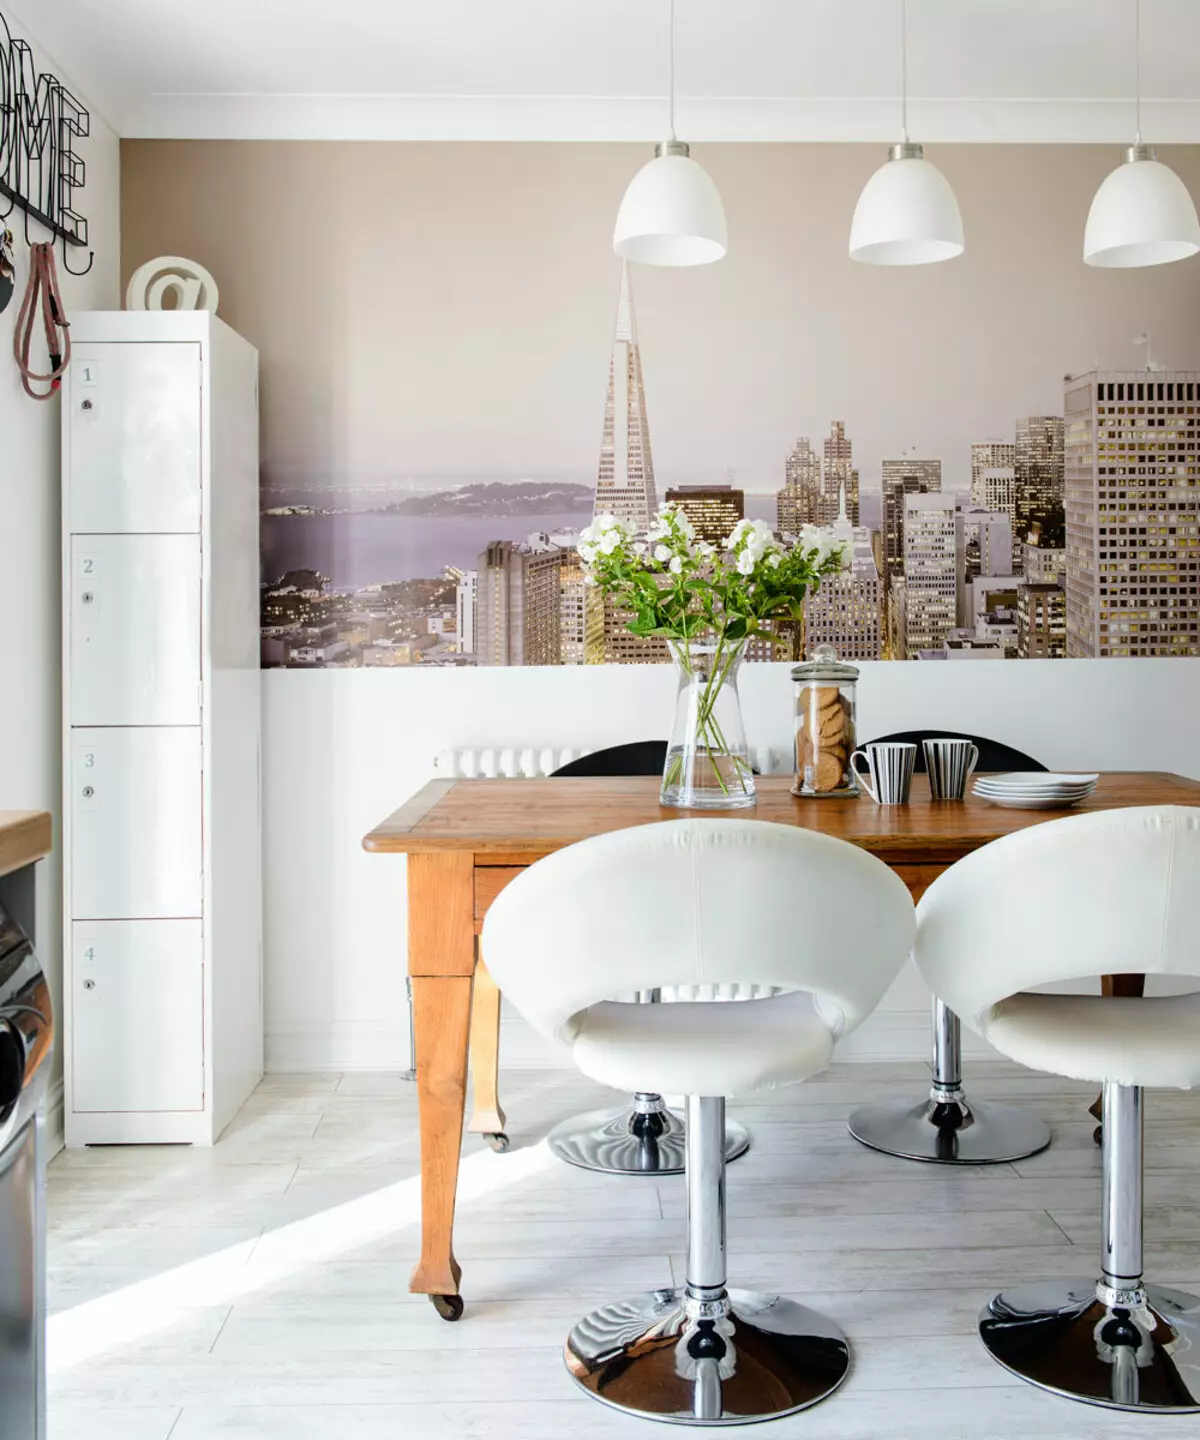 Hình nền cho nhà bếp (102 ảnh): Thiết kế hình nền nhà bếp cho tường bếp trong căn hộ, đẹp sáng, sáng và các tùy chọn hình nền khác trong nội thất 21113_63